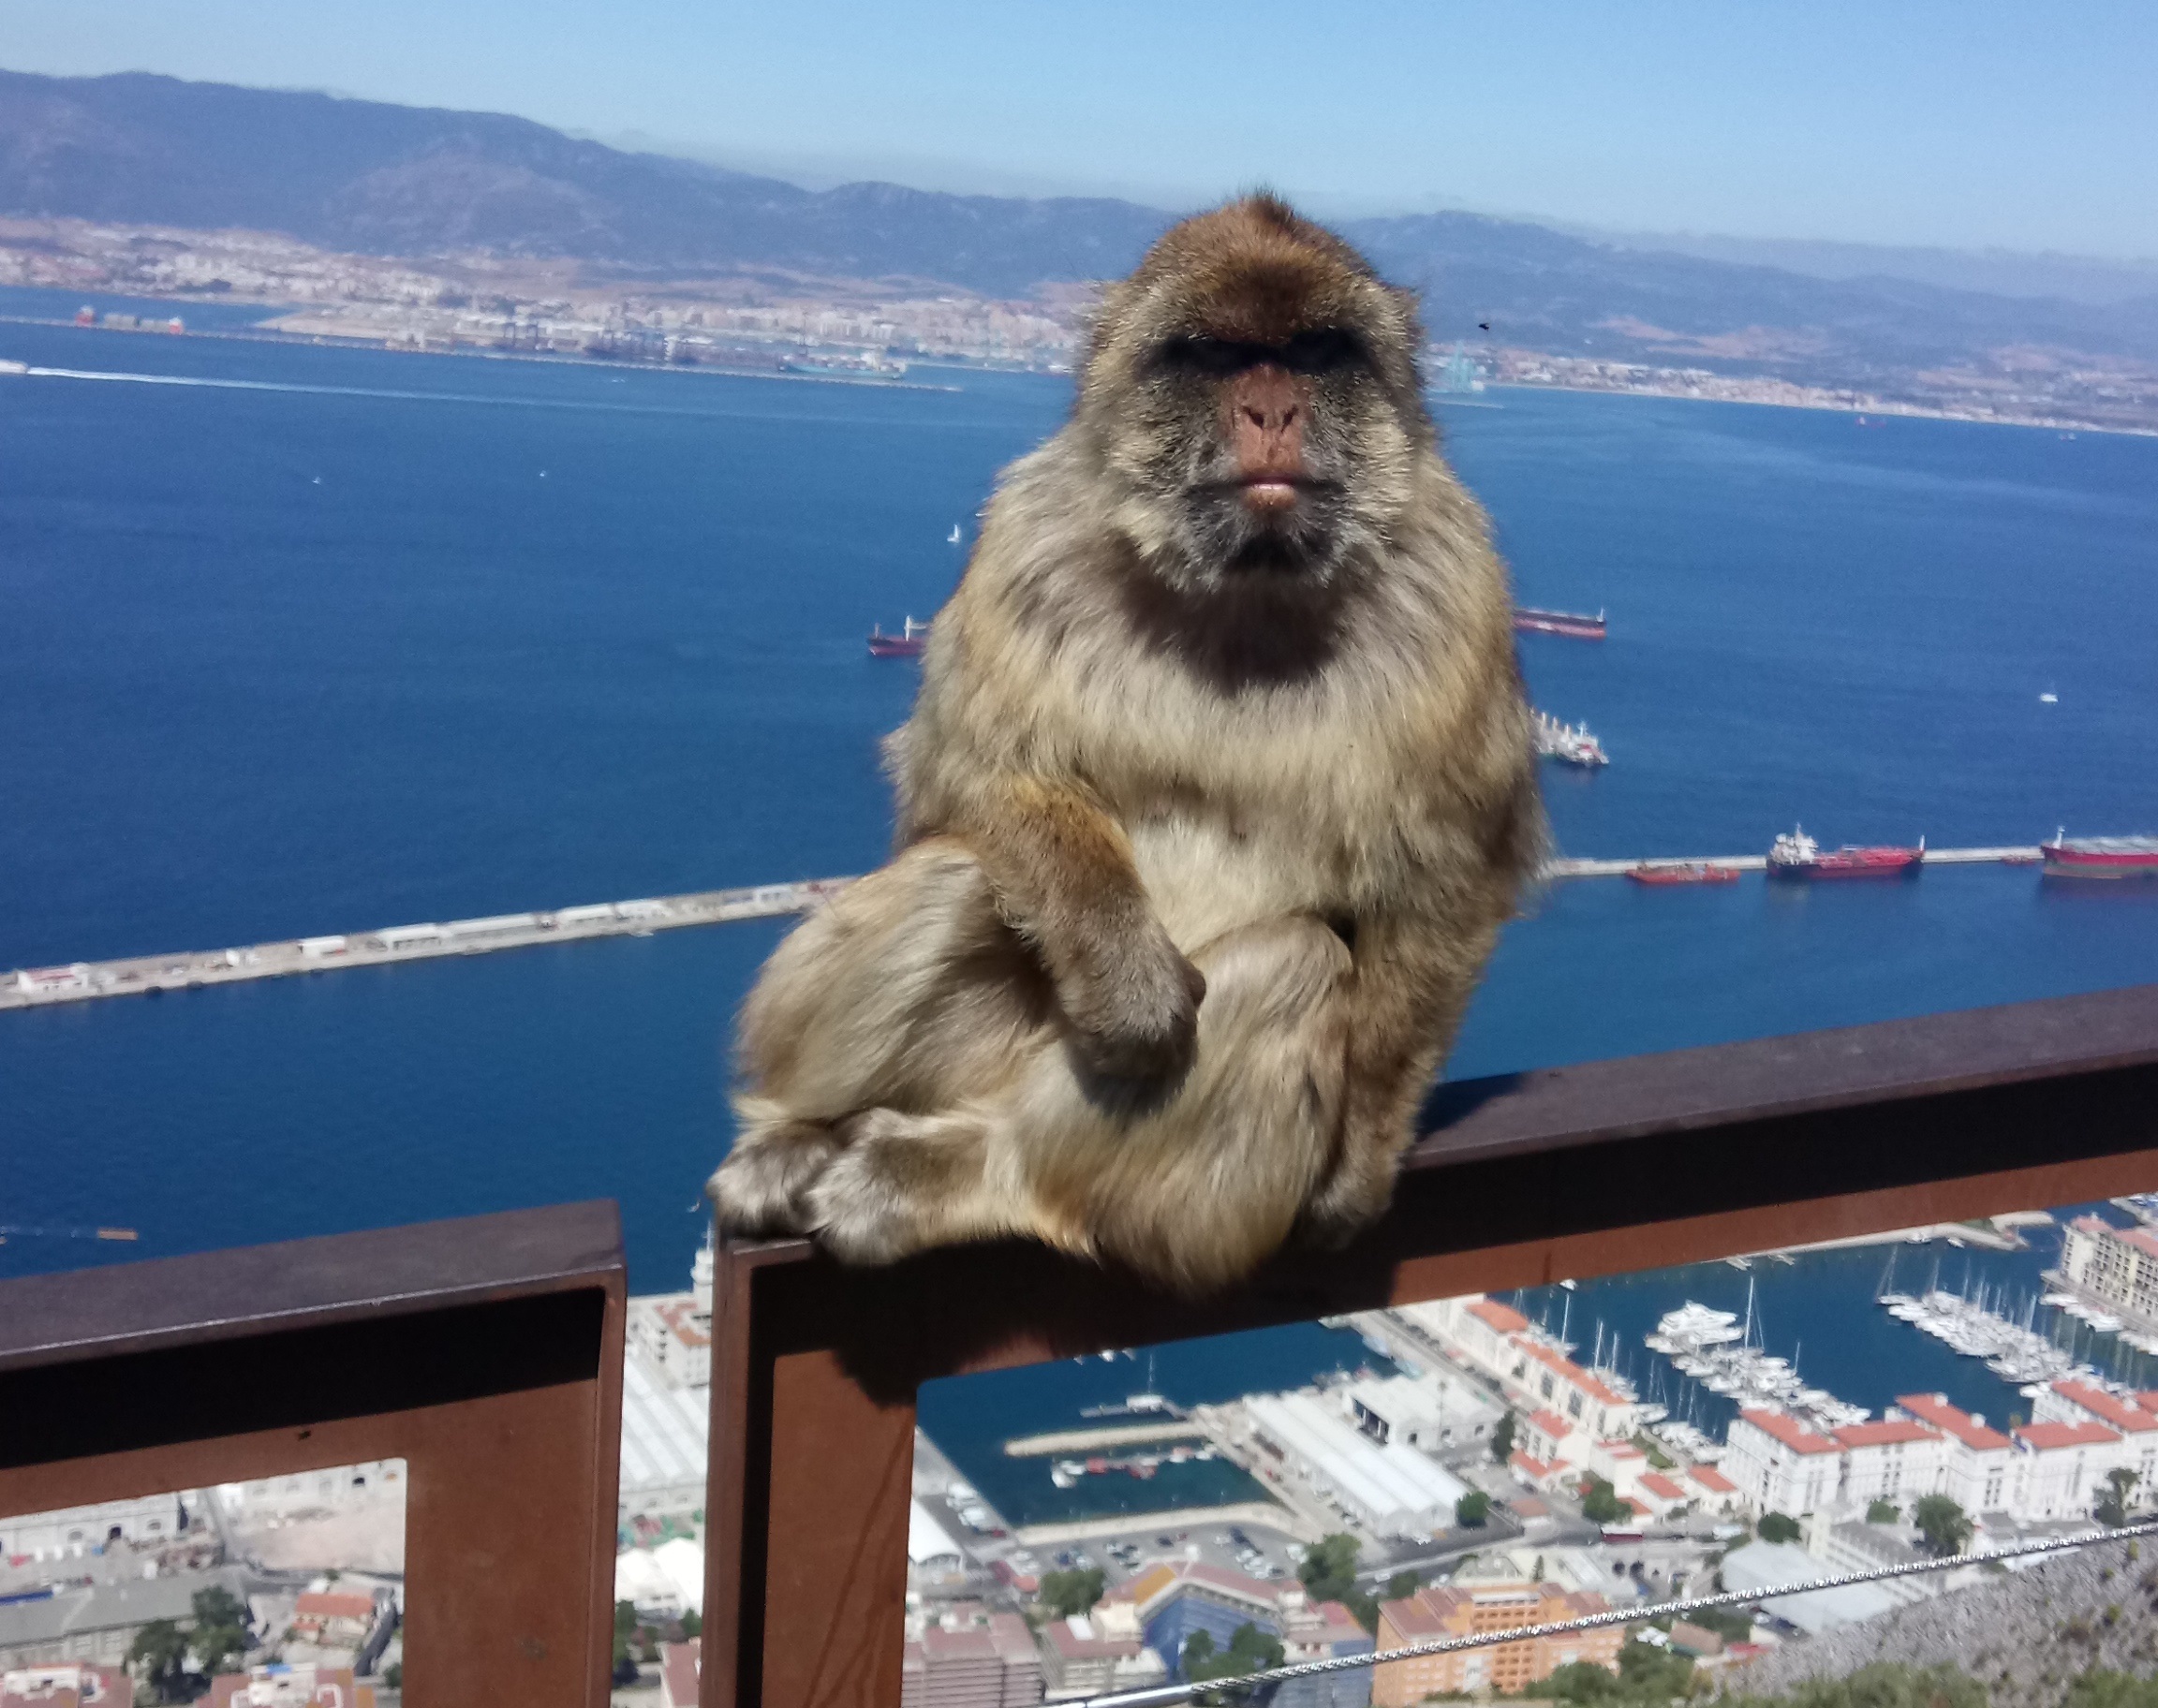 Hoe kun je ondanks de toeristische drukte authentieke ervaringen van Gibraltar opdoen?